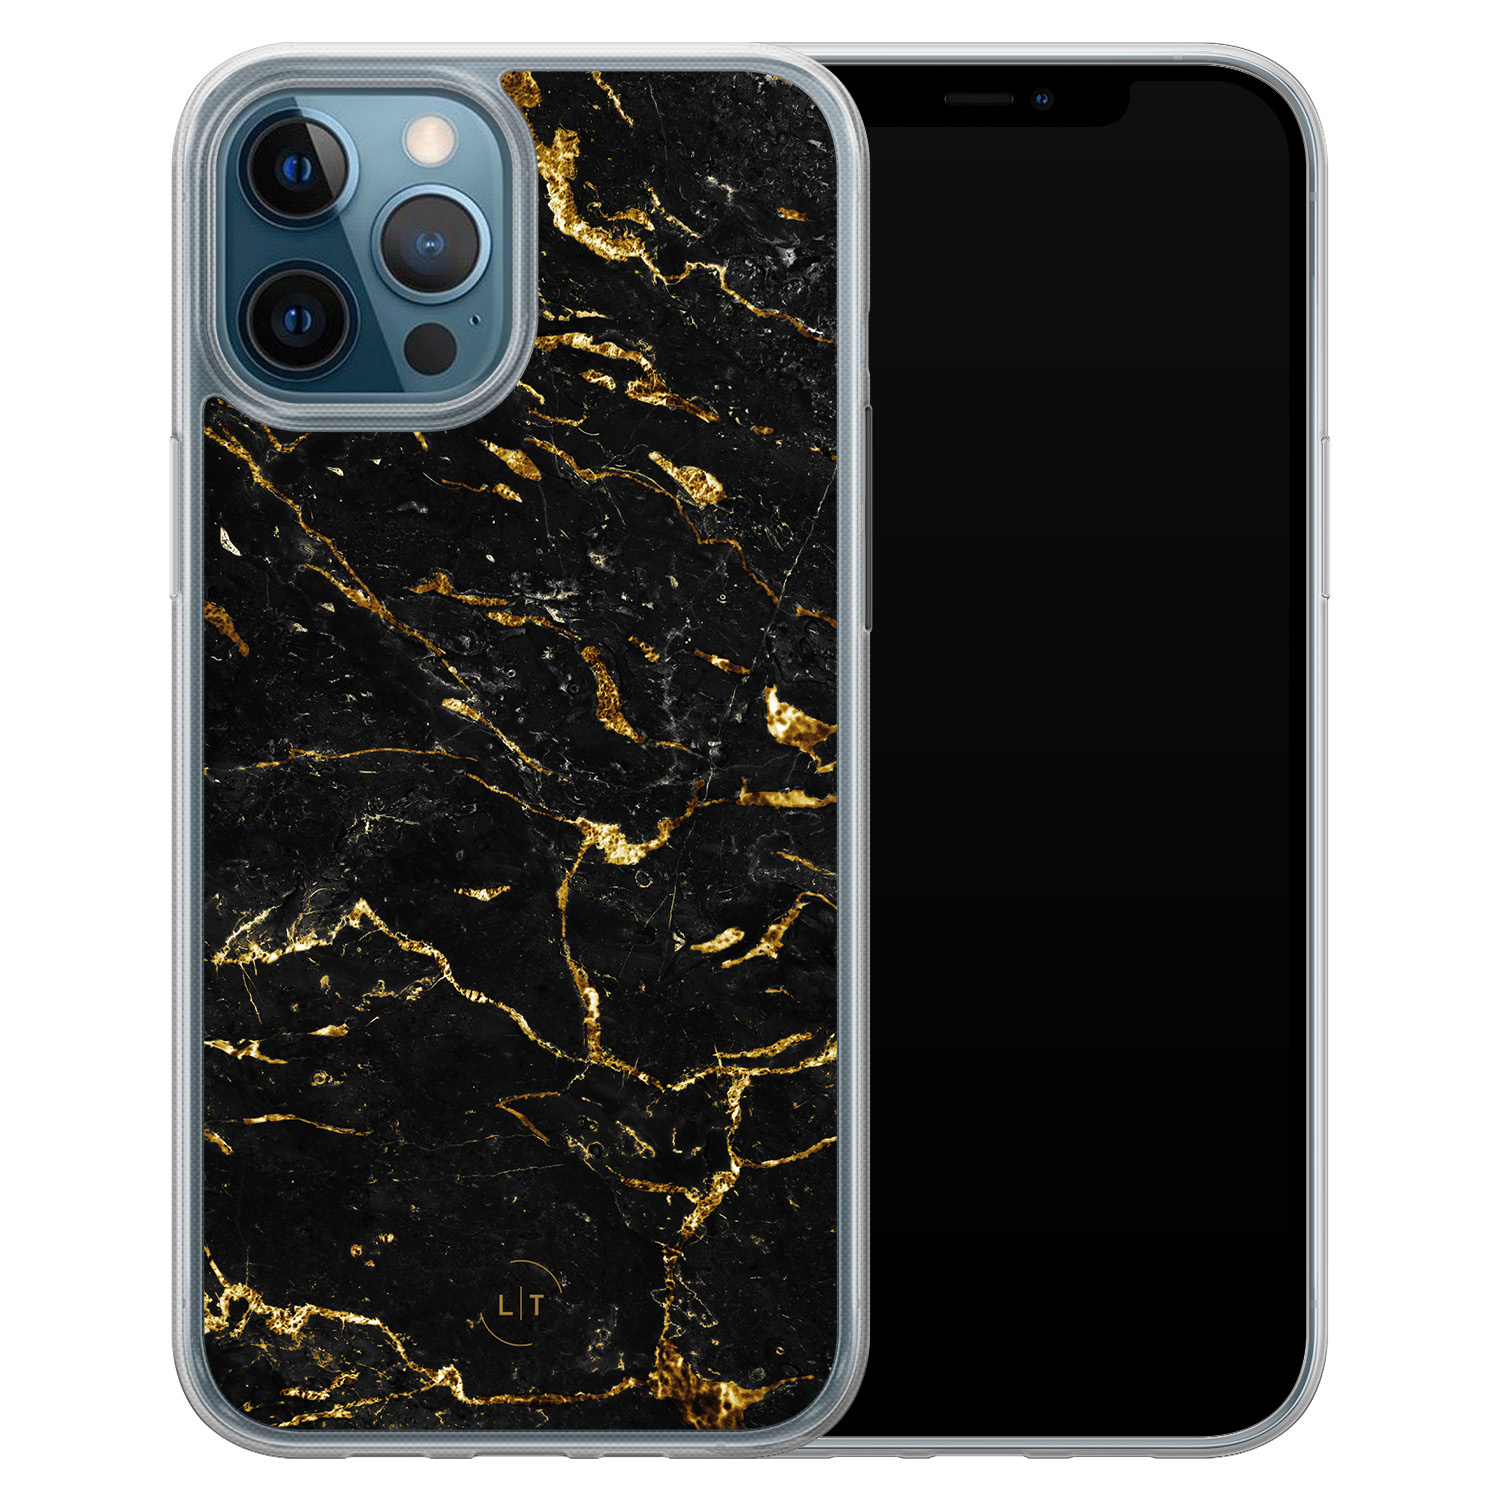 Leuke Telefoonhoesjes iPhone 12 (Pro) hybride hoesje - Marmer zwart goud